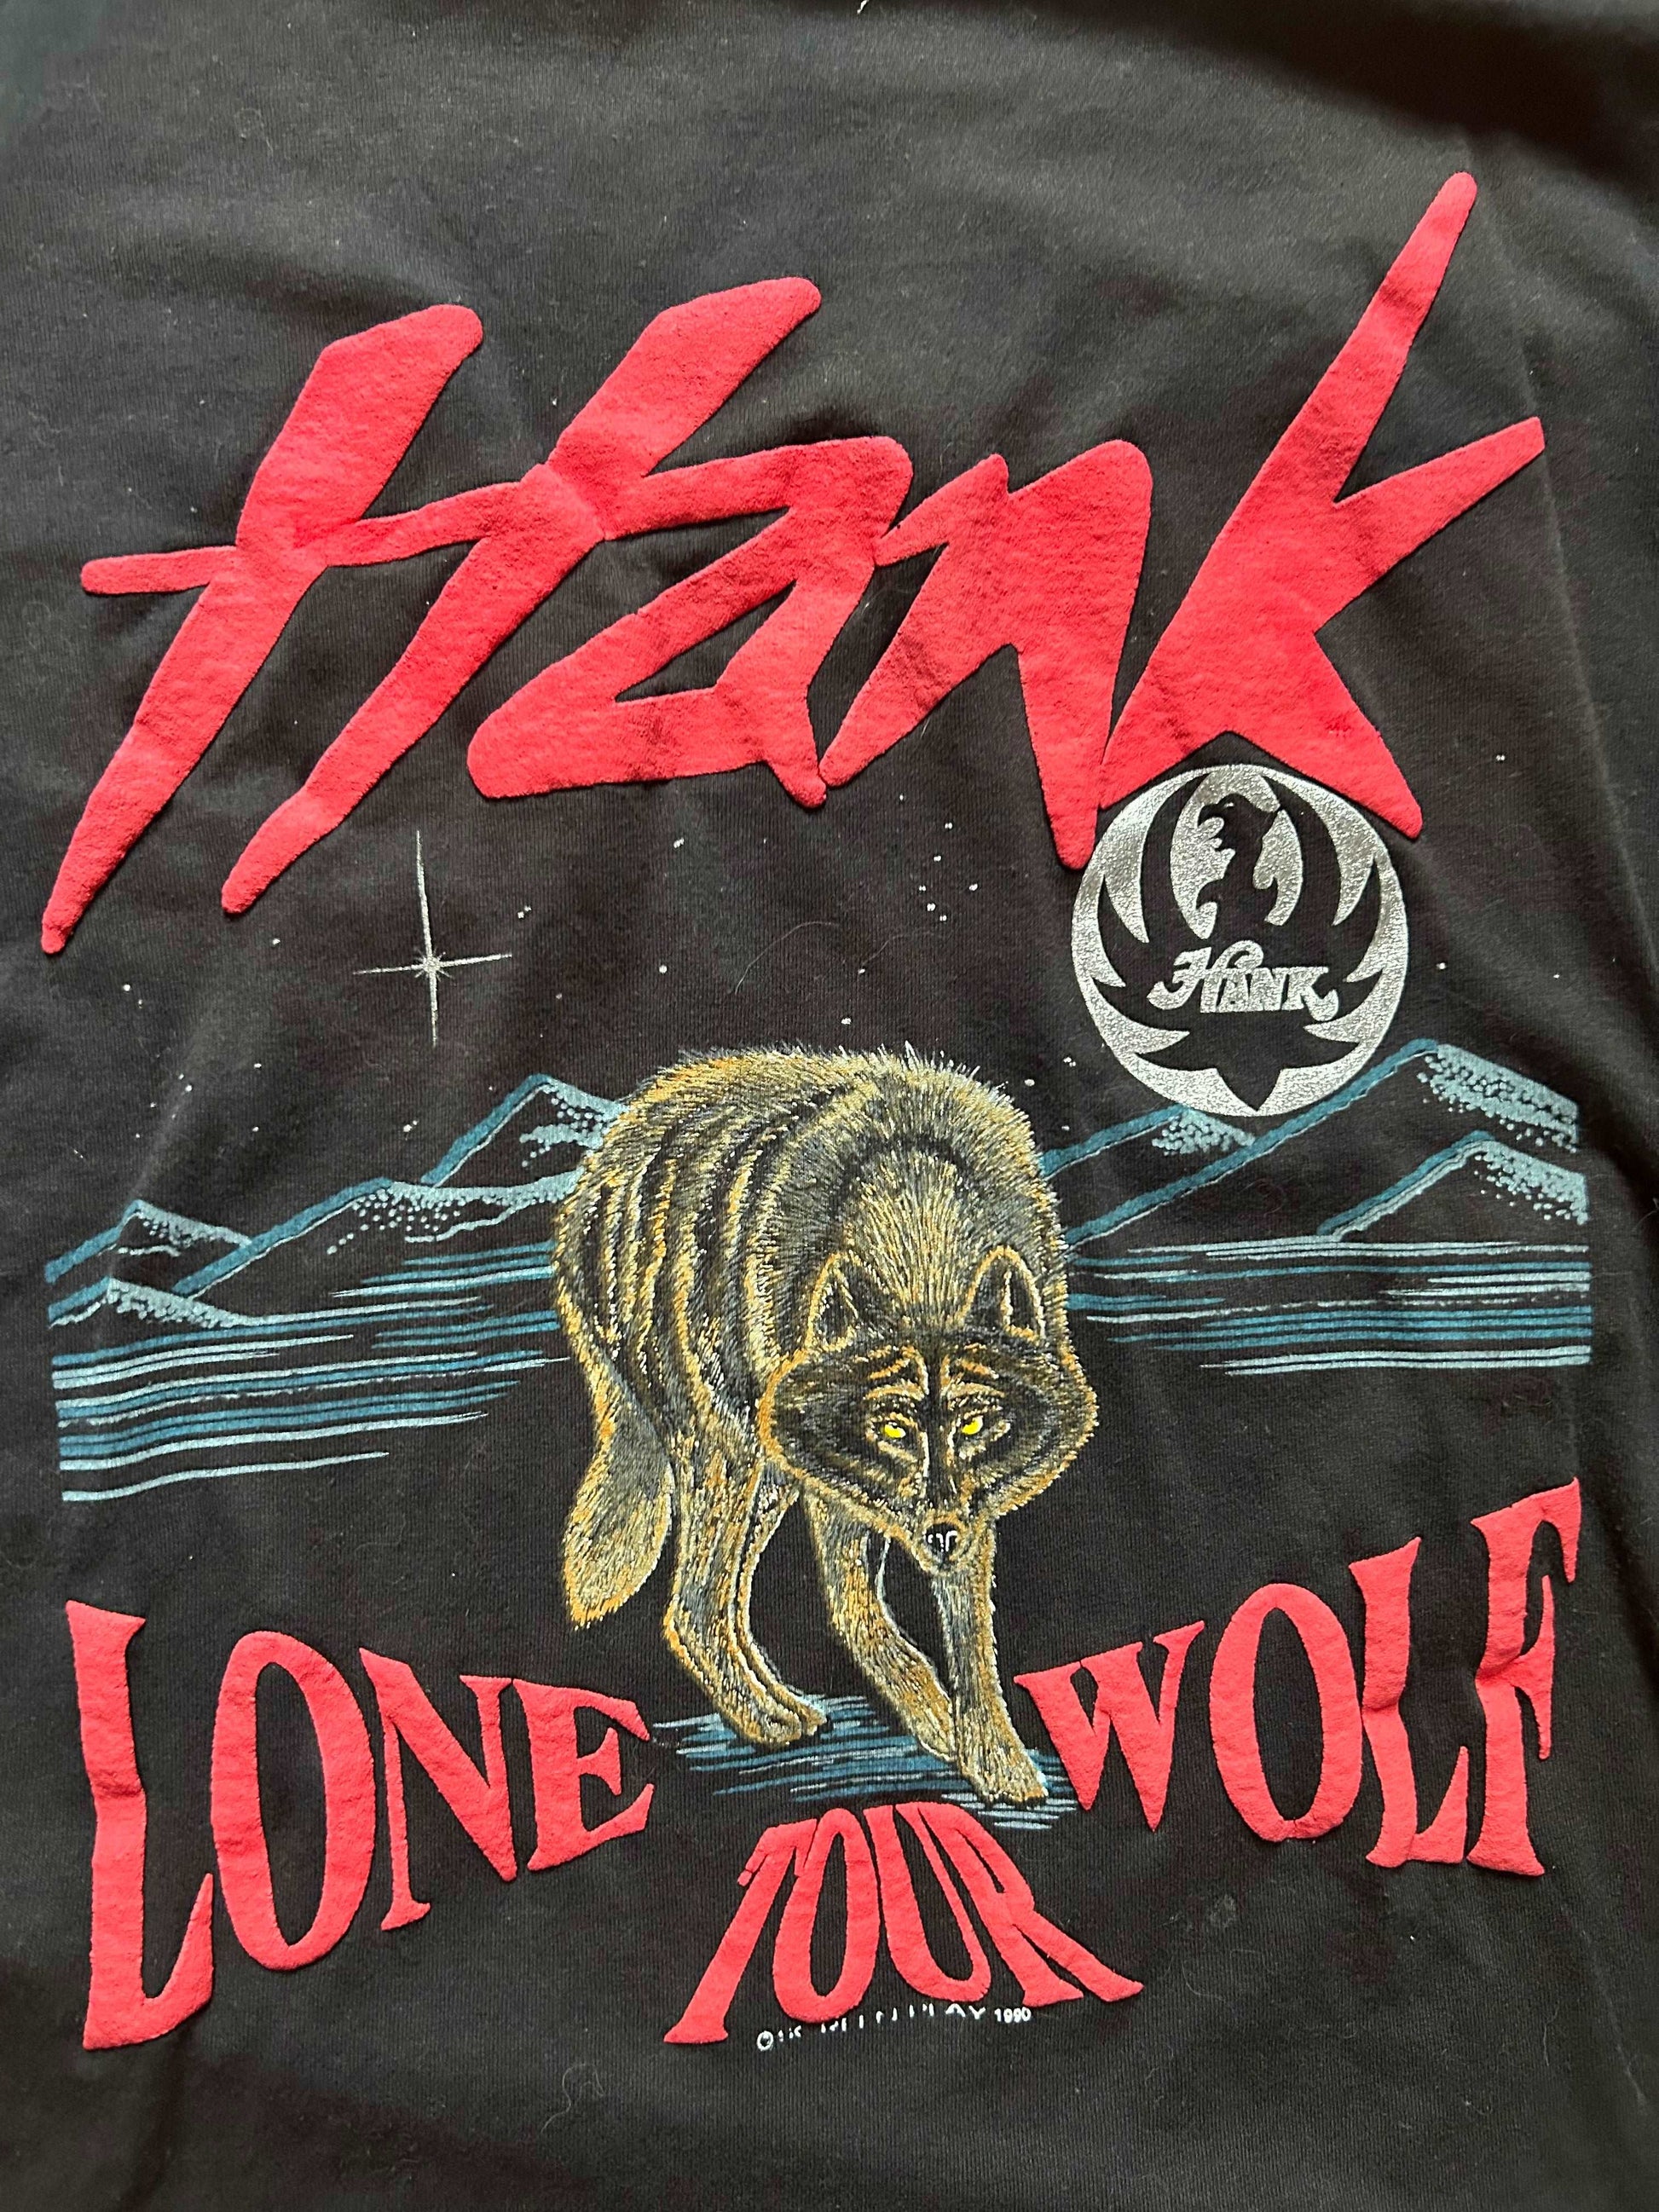 Deadstock 1990 Hank Jr alone Wolf Tour Tee Size - XL